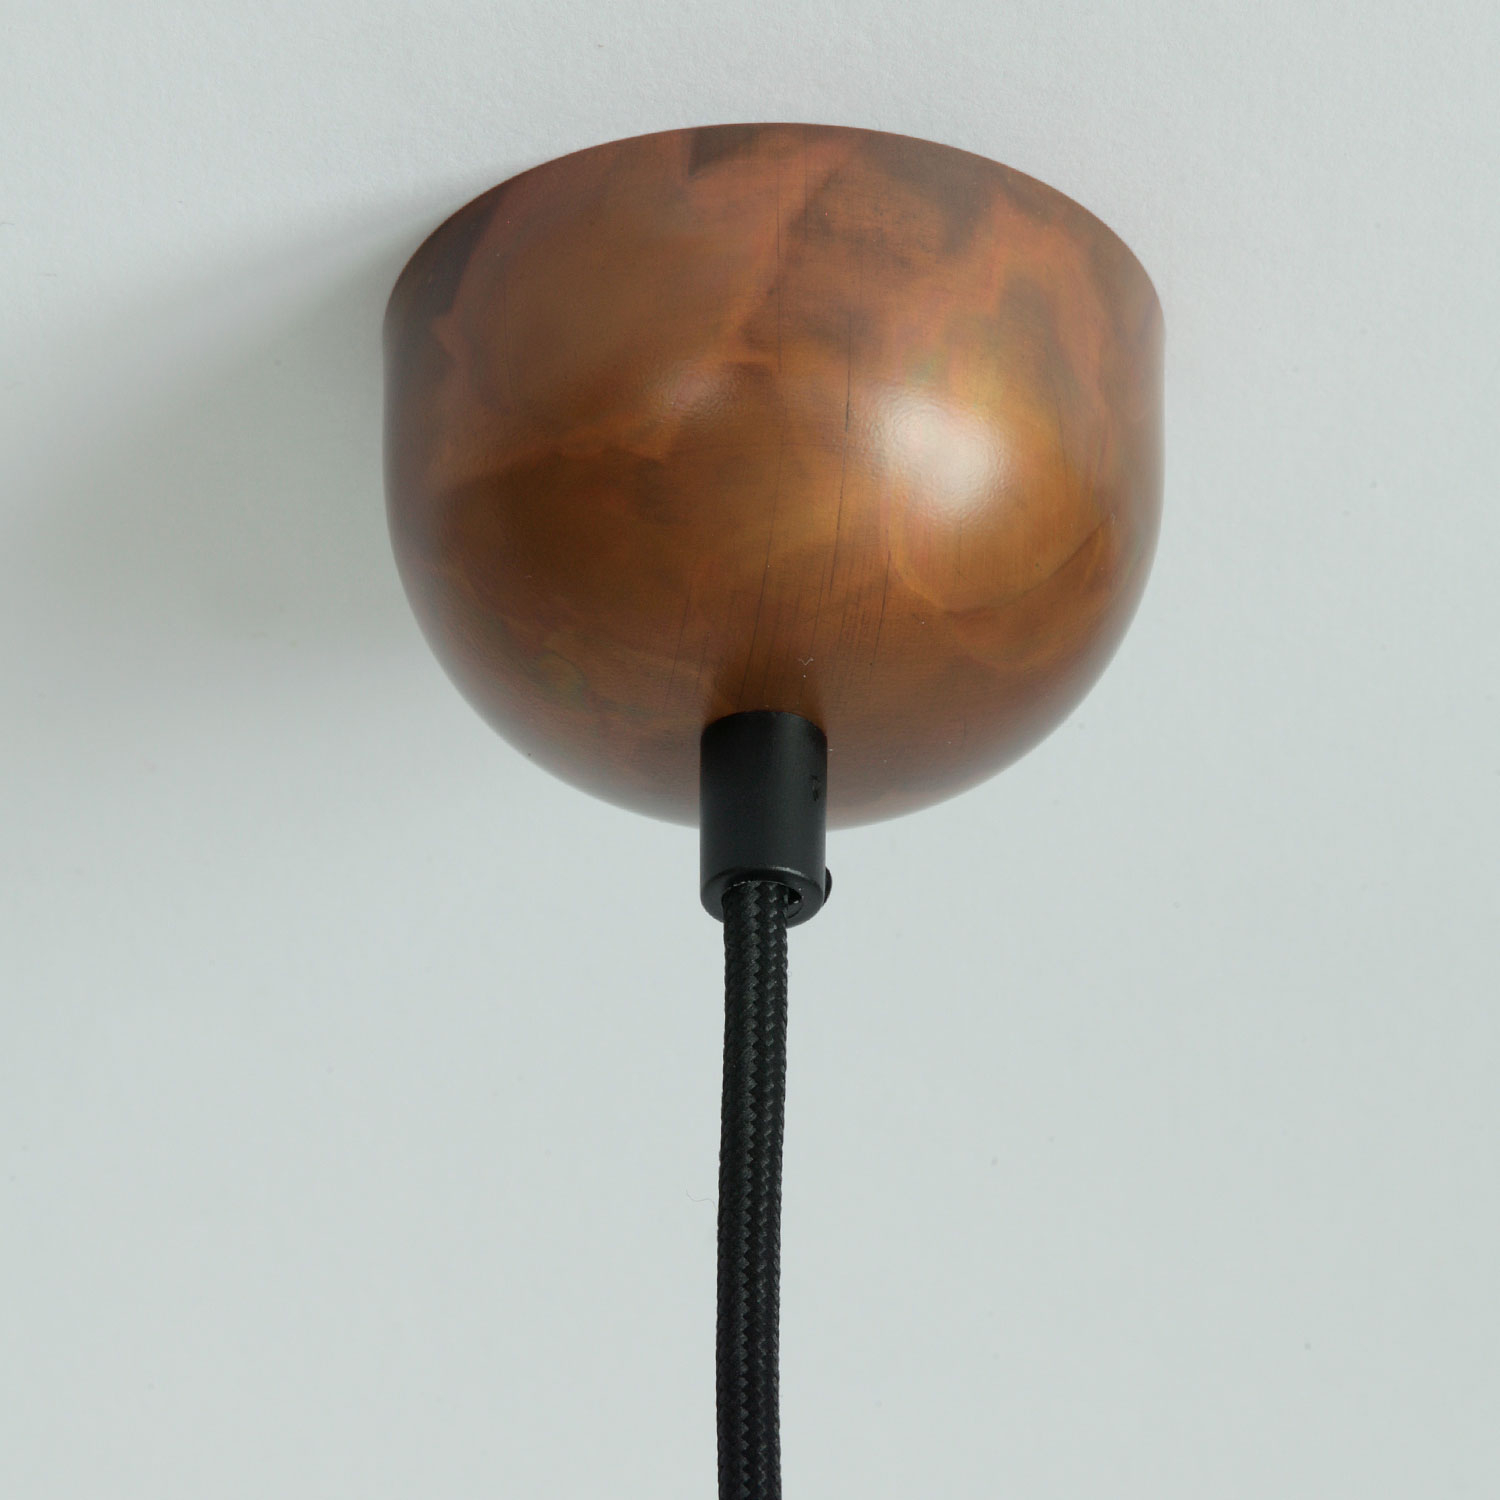 KEHL Hängelampe mit gewölbtem Schirm aus Kupfer, Ø 25-50 cm: Kupfer geflammt, matt lackiert, schwarzes Textilkabel